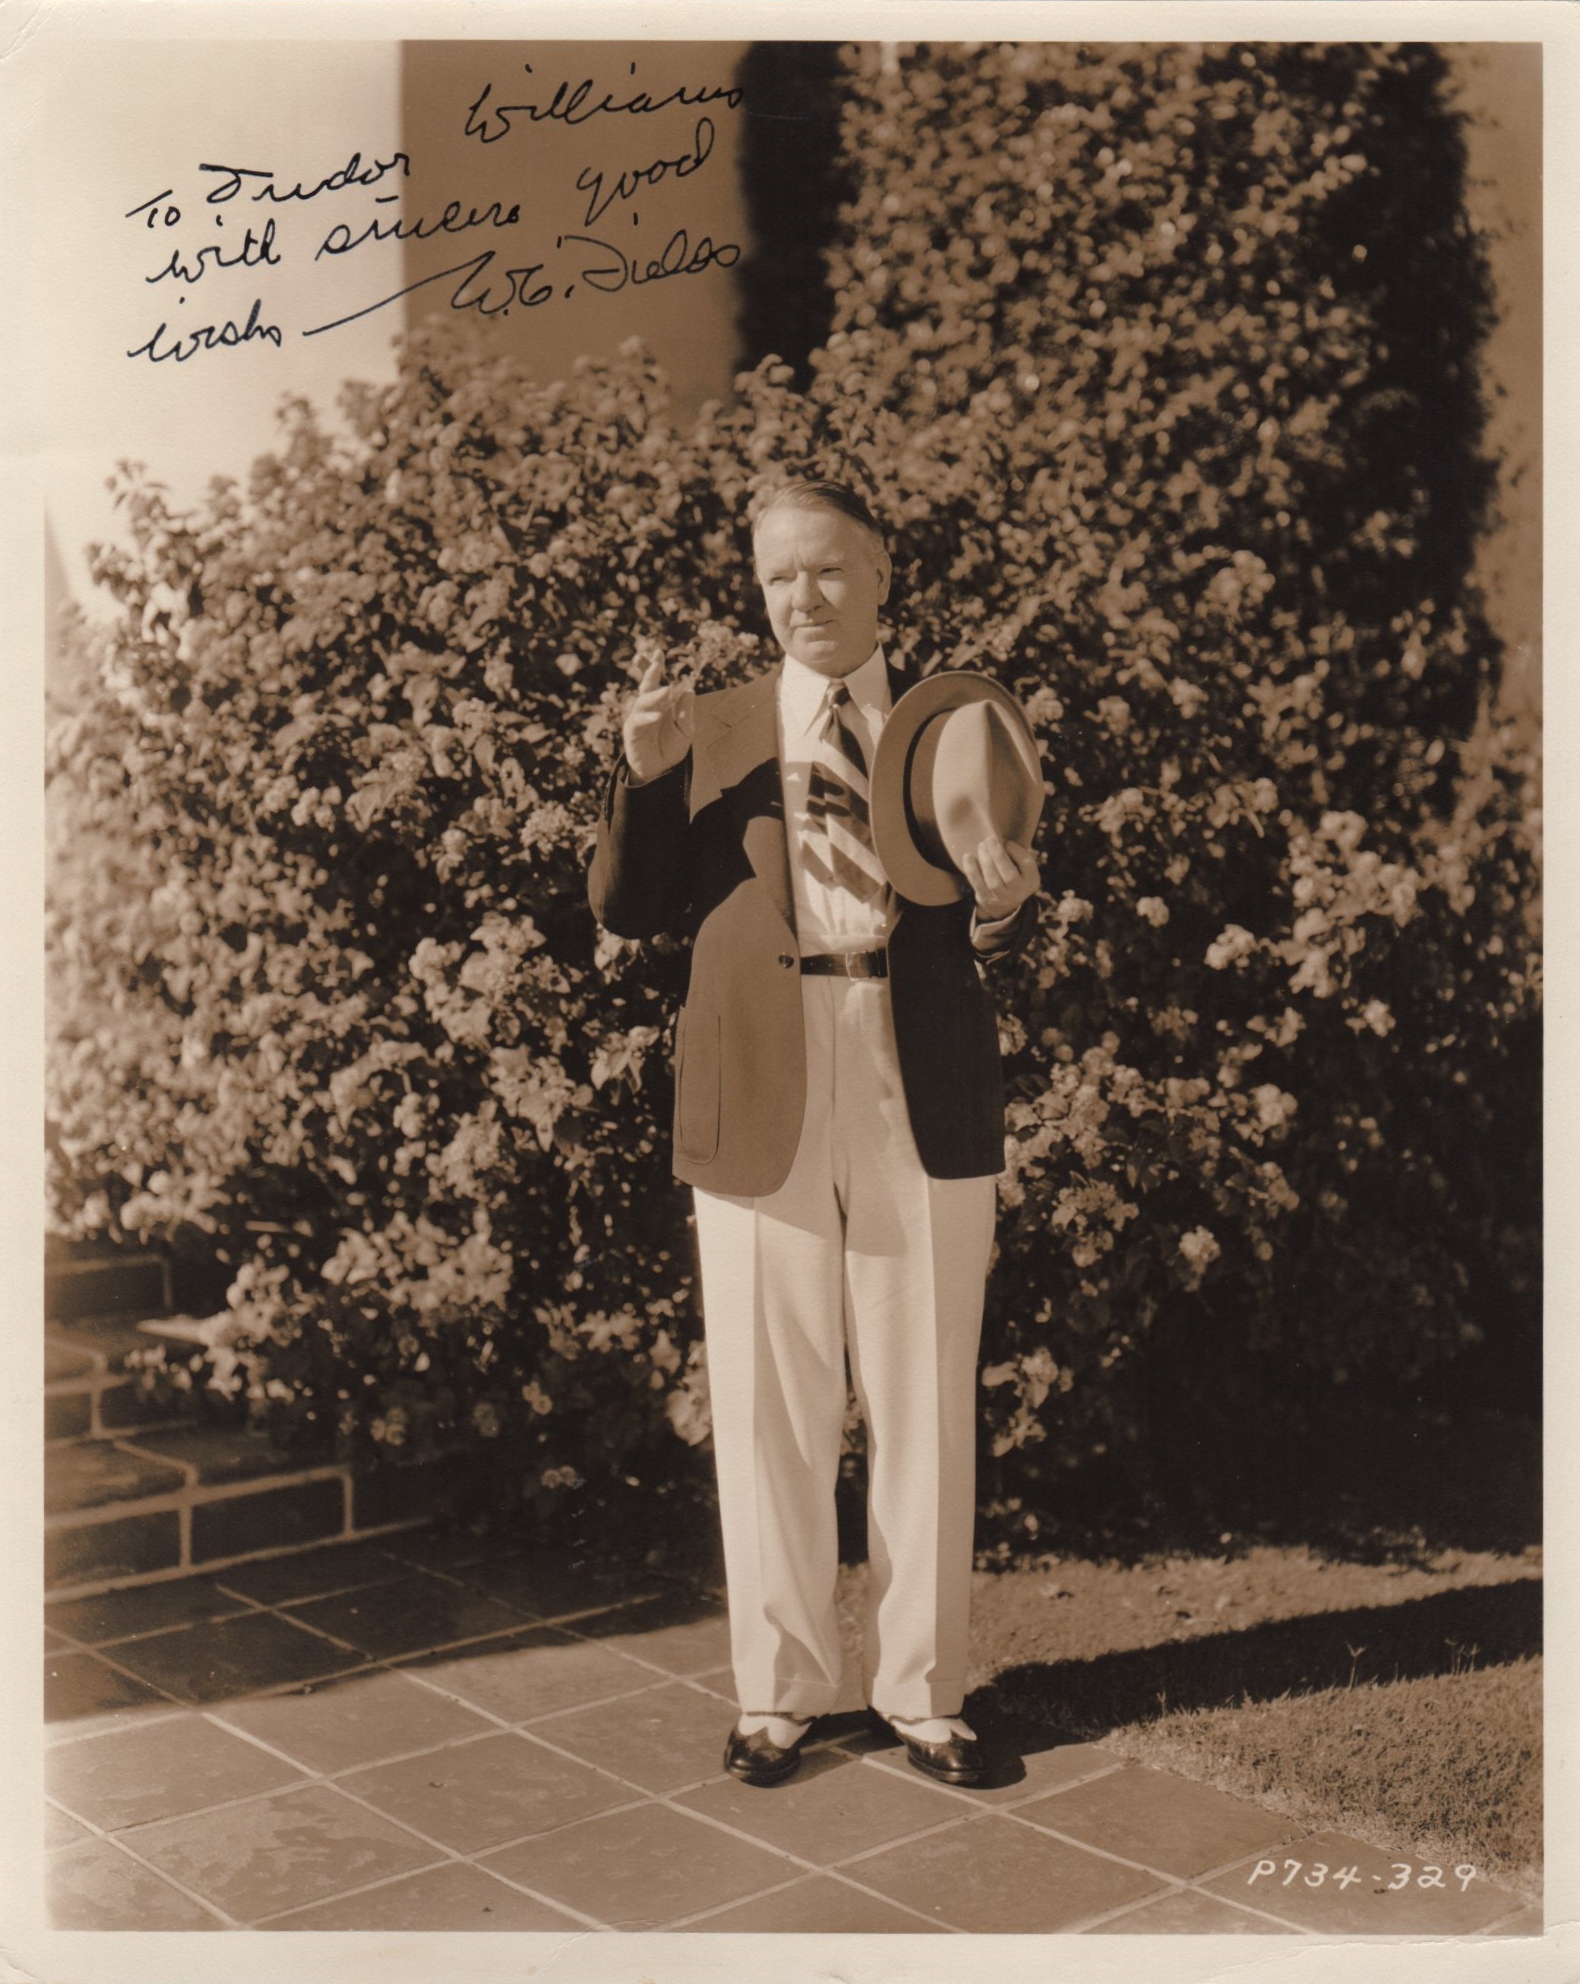 FIELDS W.C.: (1880-1946) American Film Comedian.